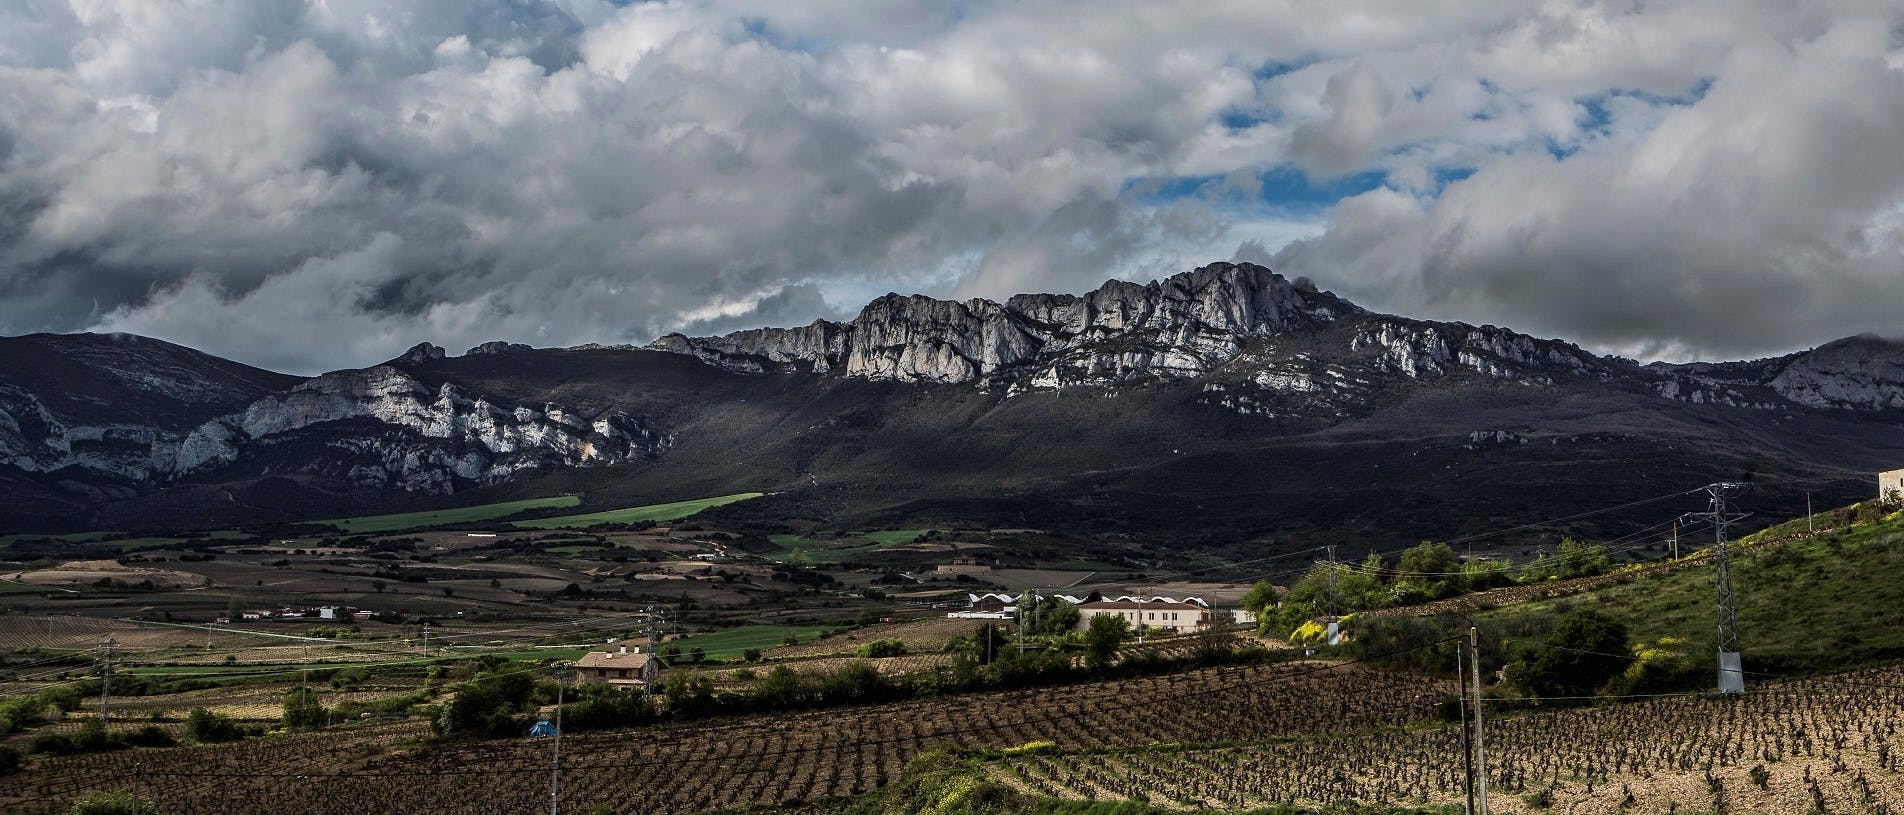 Wijnmakerijbezoek in La Rioja met proeverij en lunch uit Vitoria